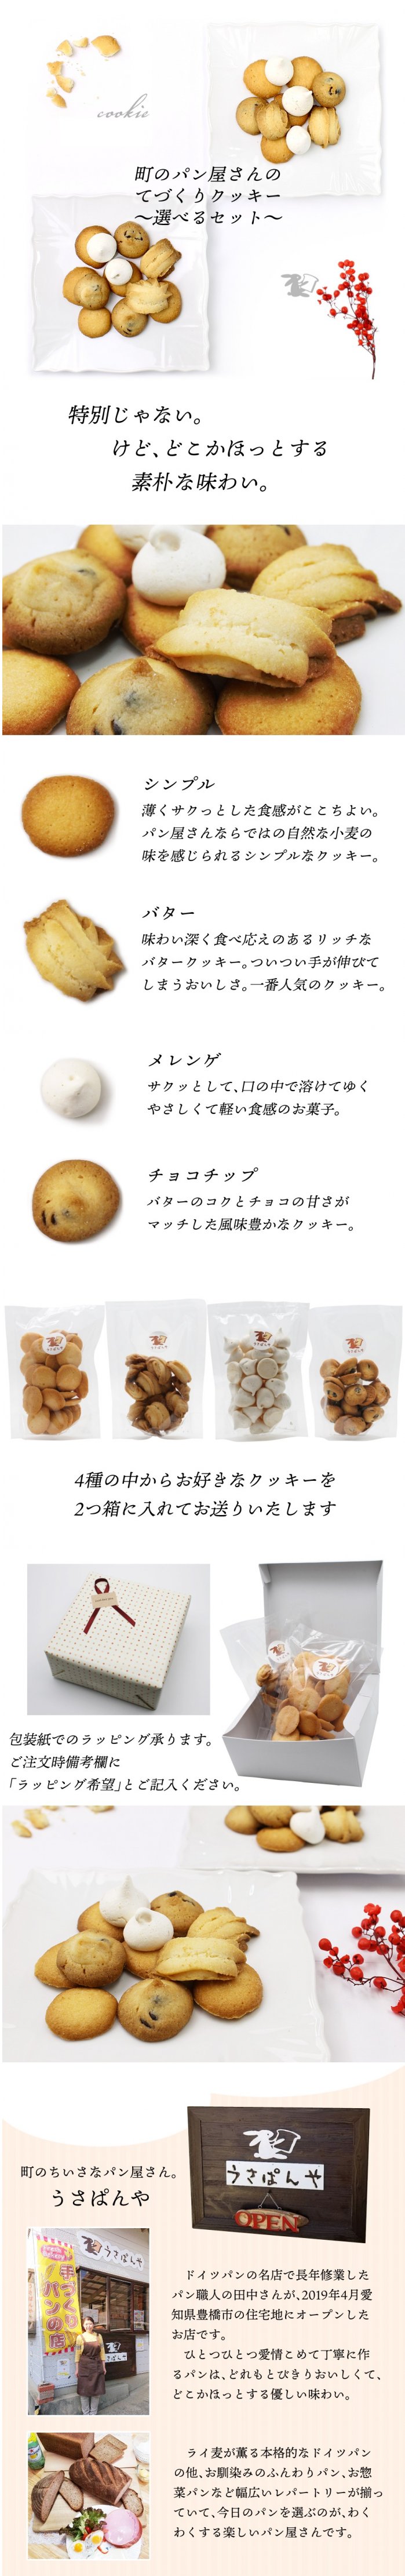 ティータイム 北軽井沢 お取り寄せグルメ  森のパン屋さん  1個 イングリッシュスコーン お茶菓子  即納 パン屋さんの手作りスコーン りんご